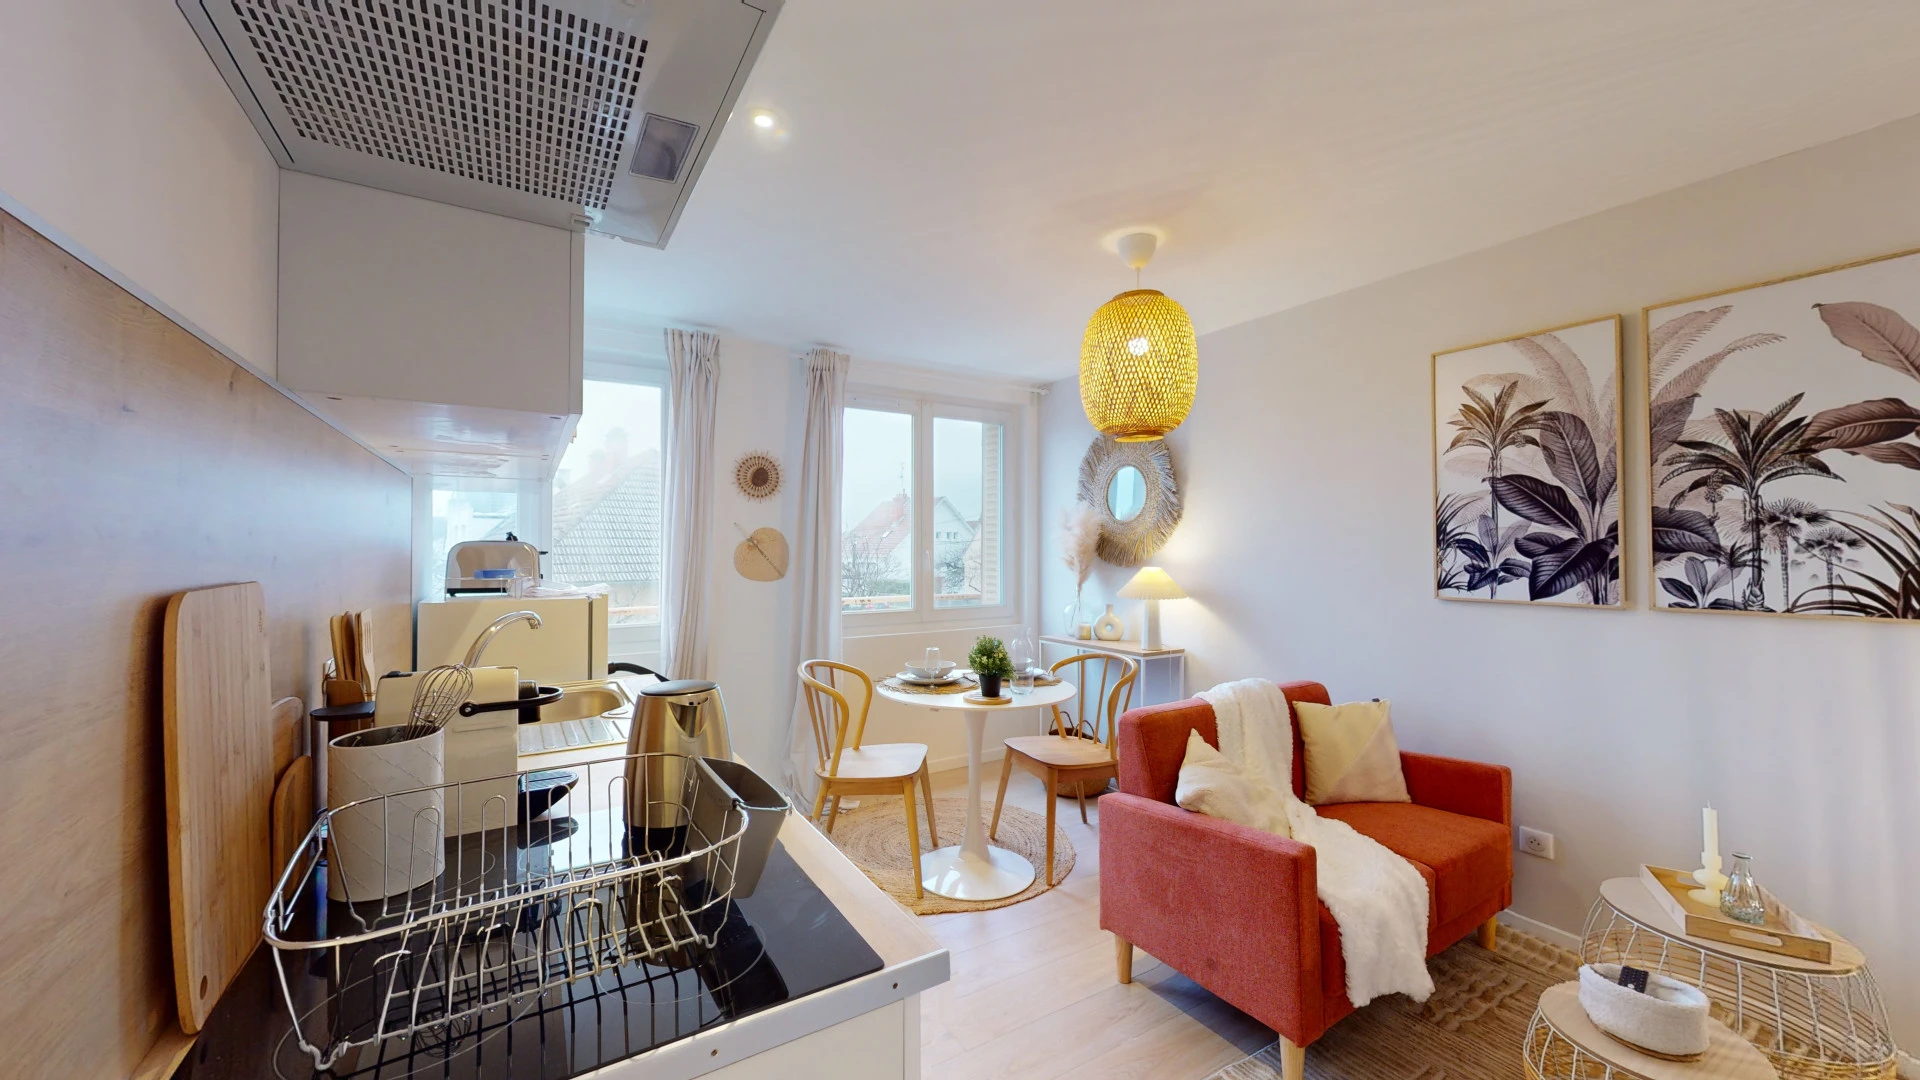 Habitación privada barata en Dijon